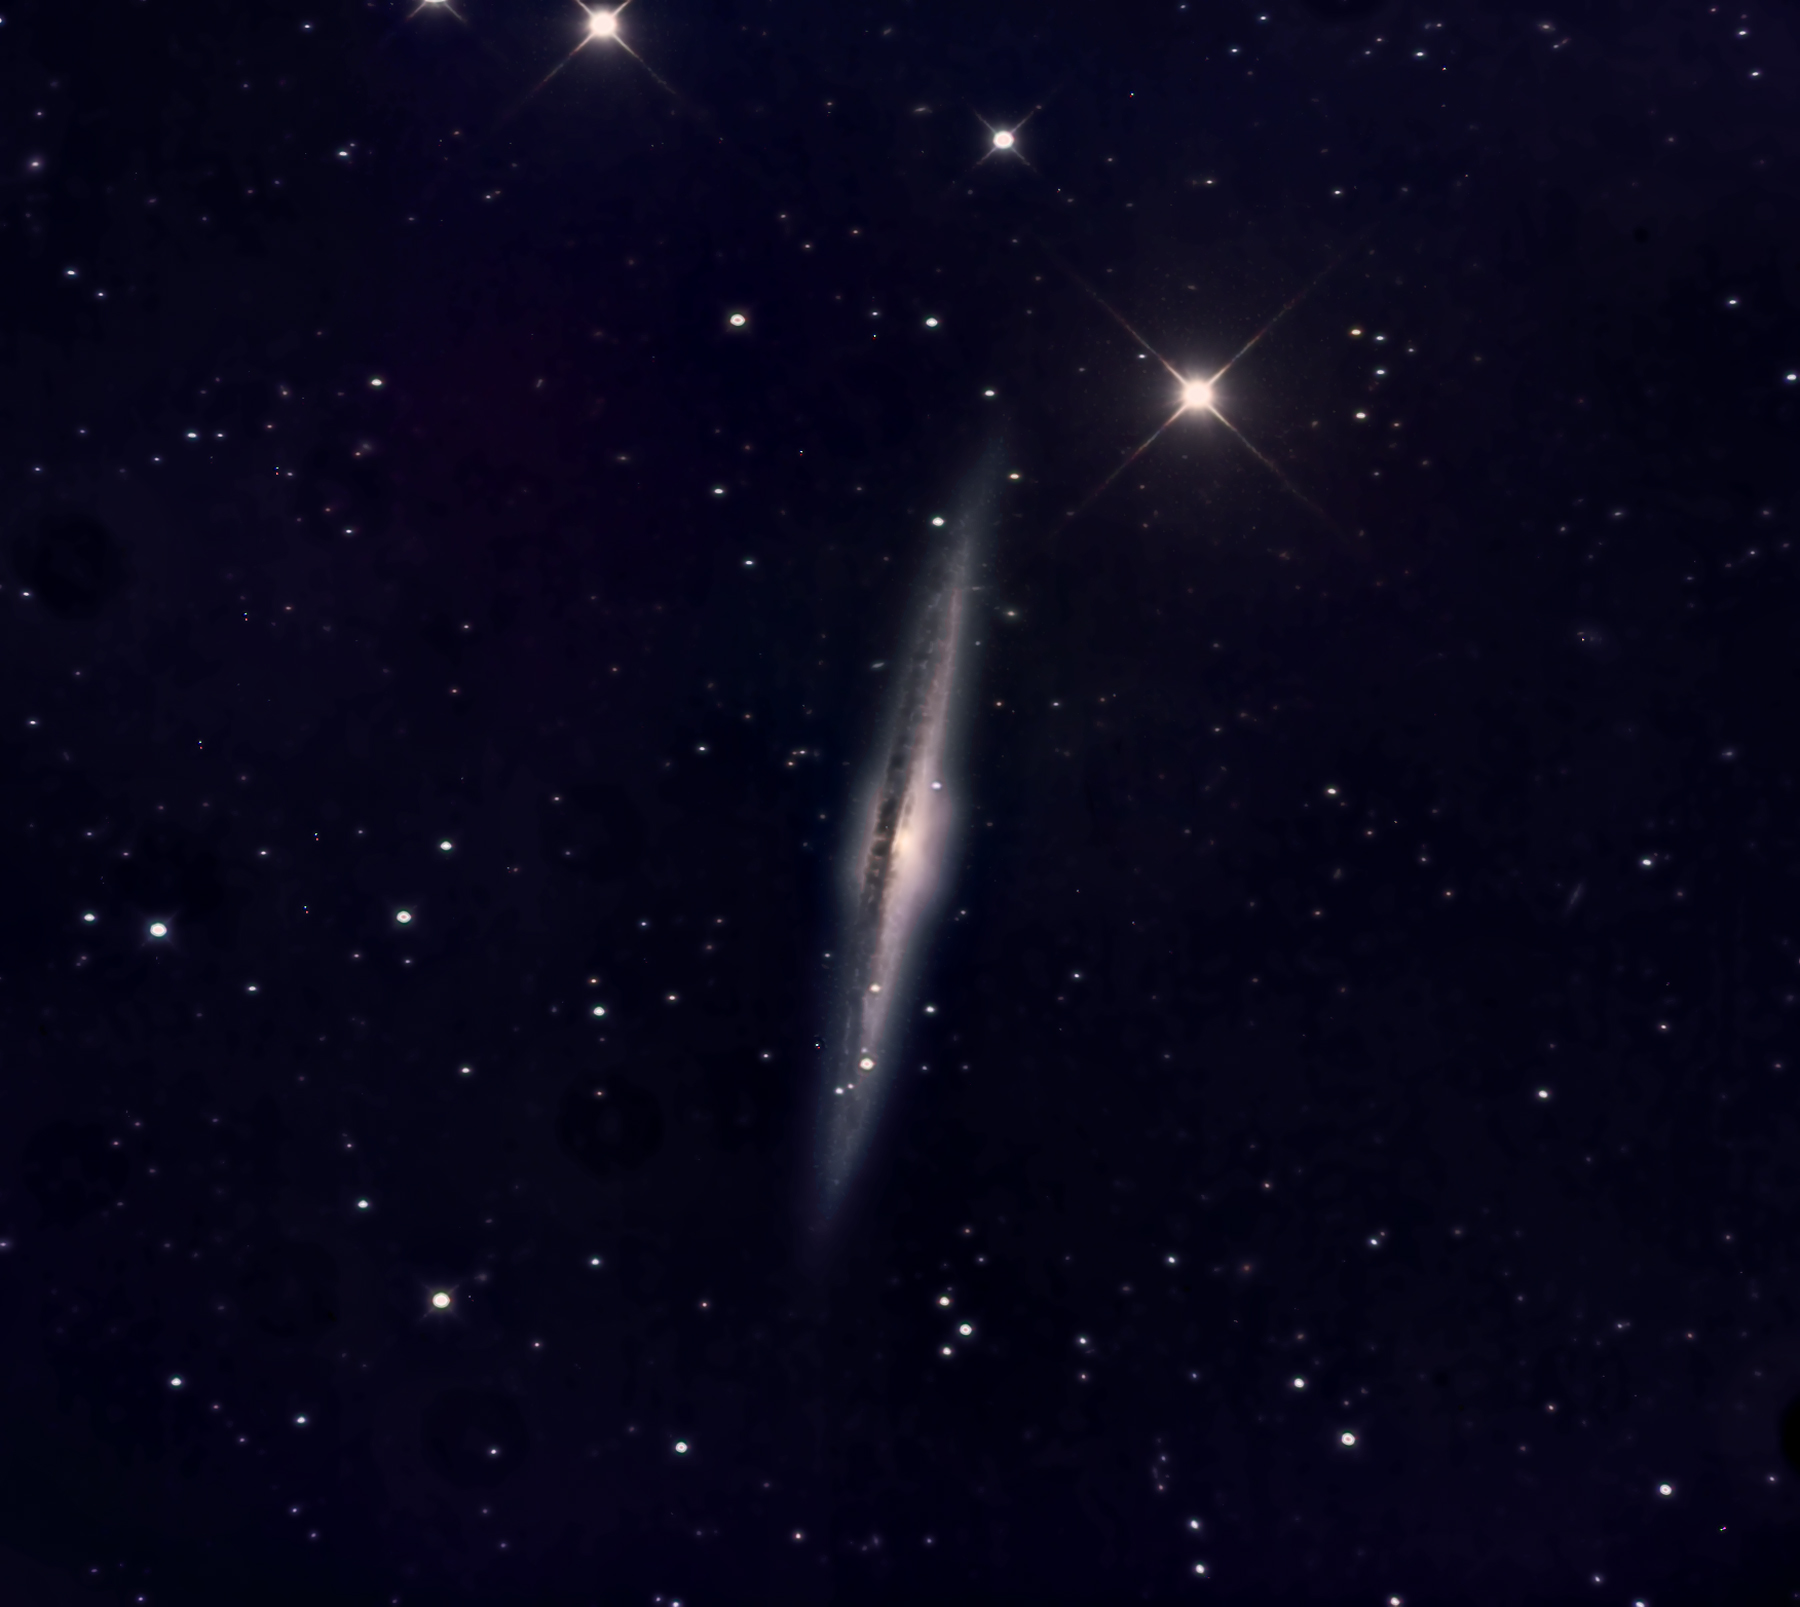 NGC5746